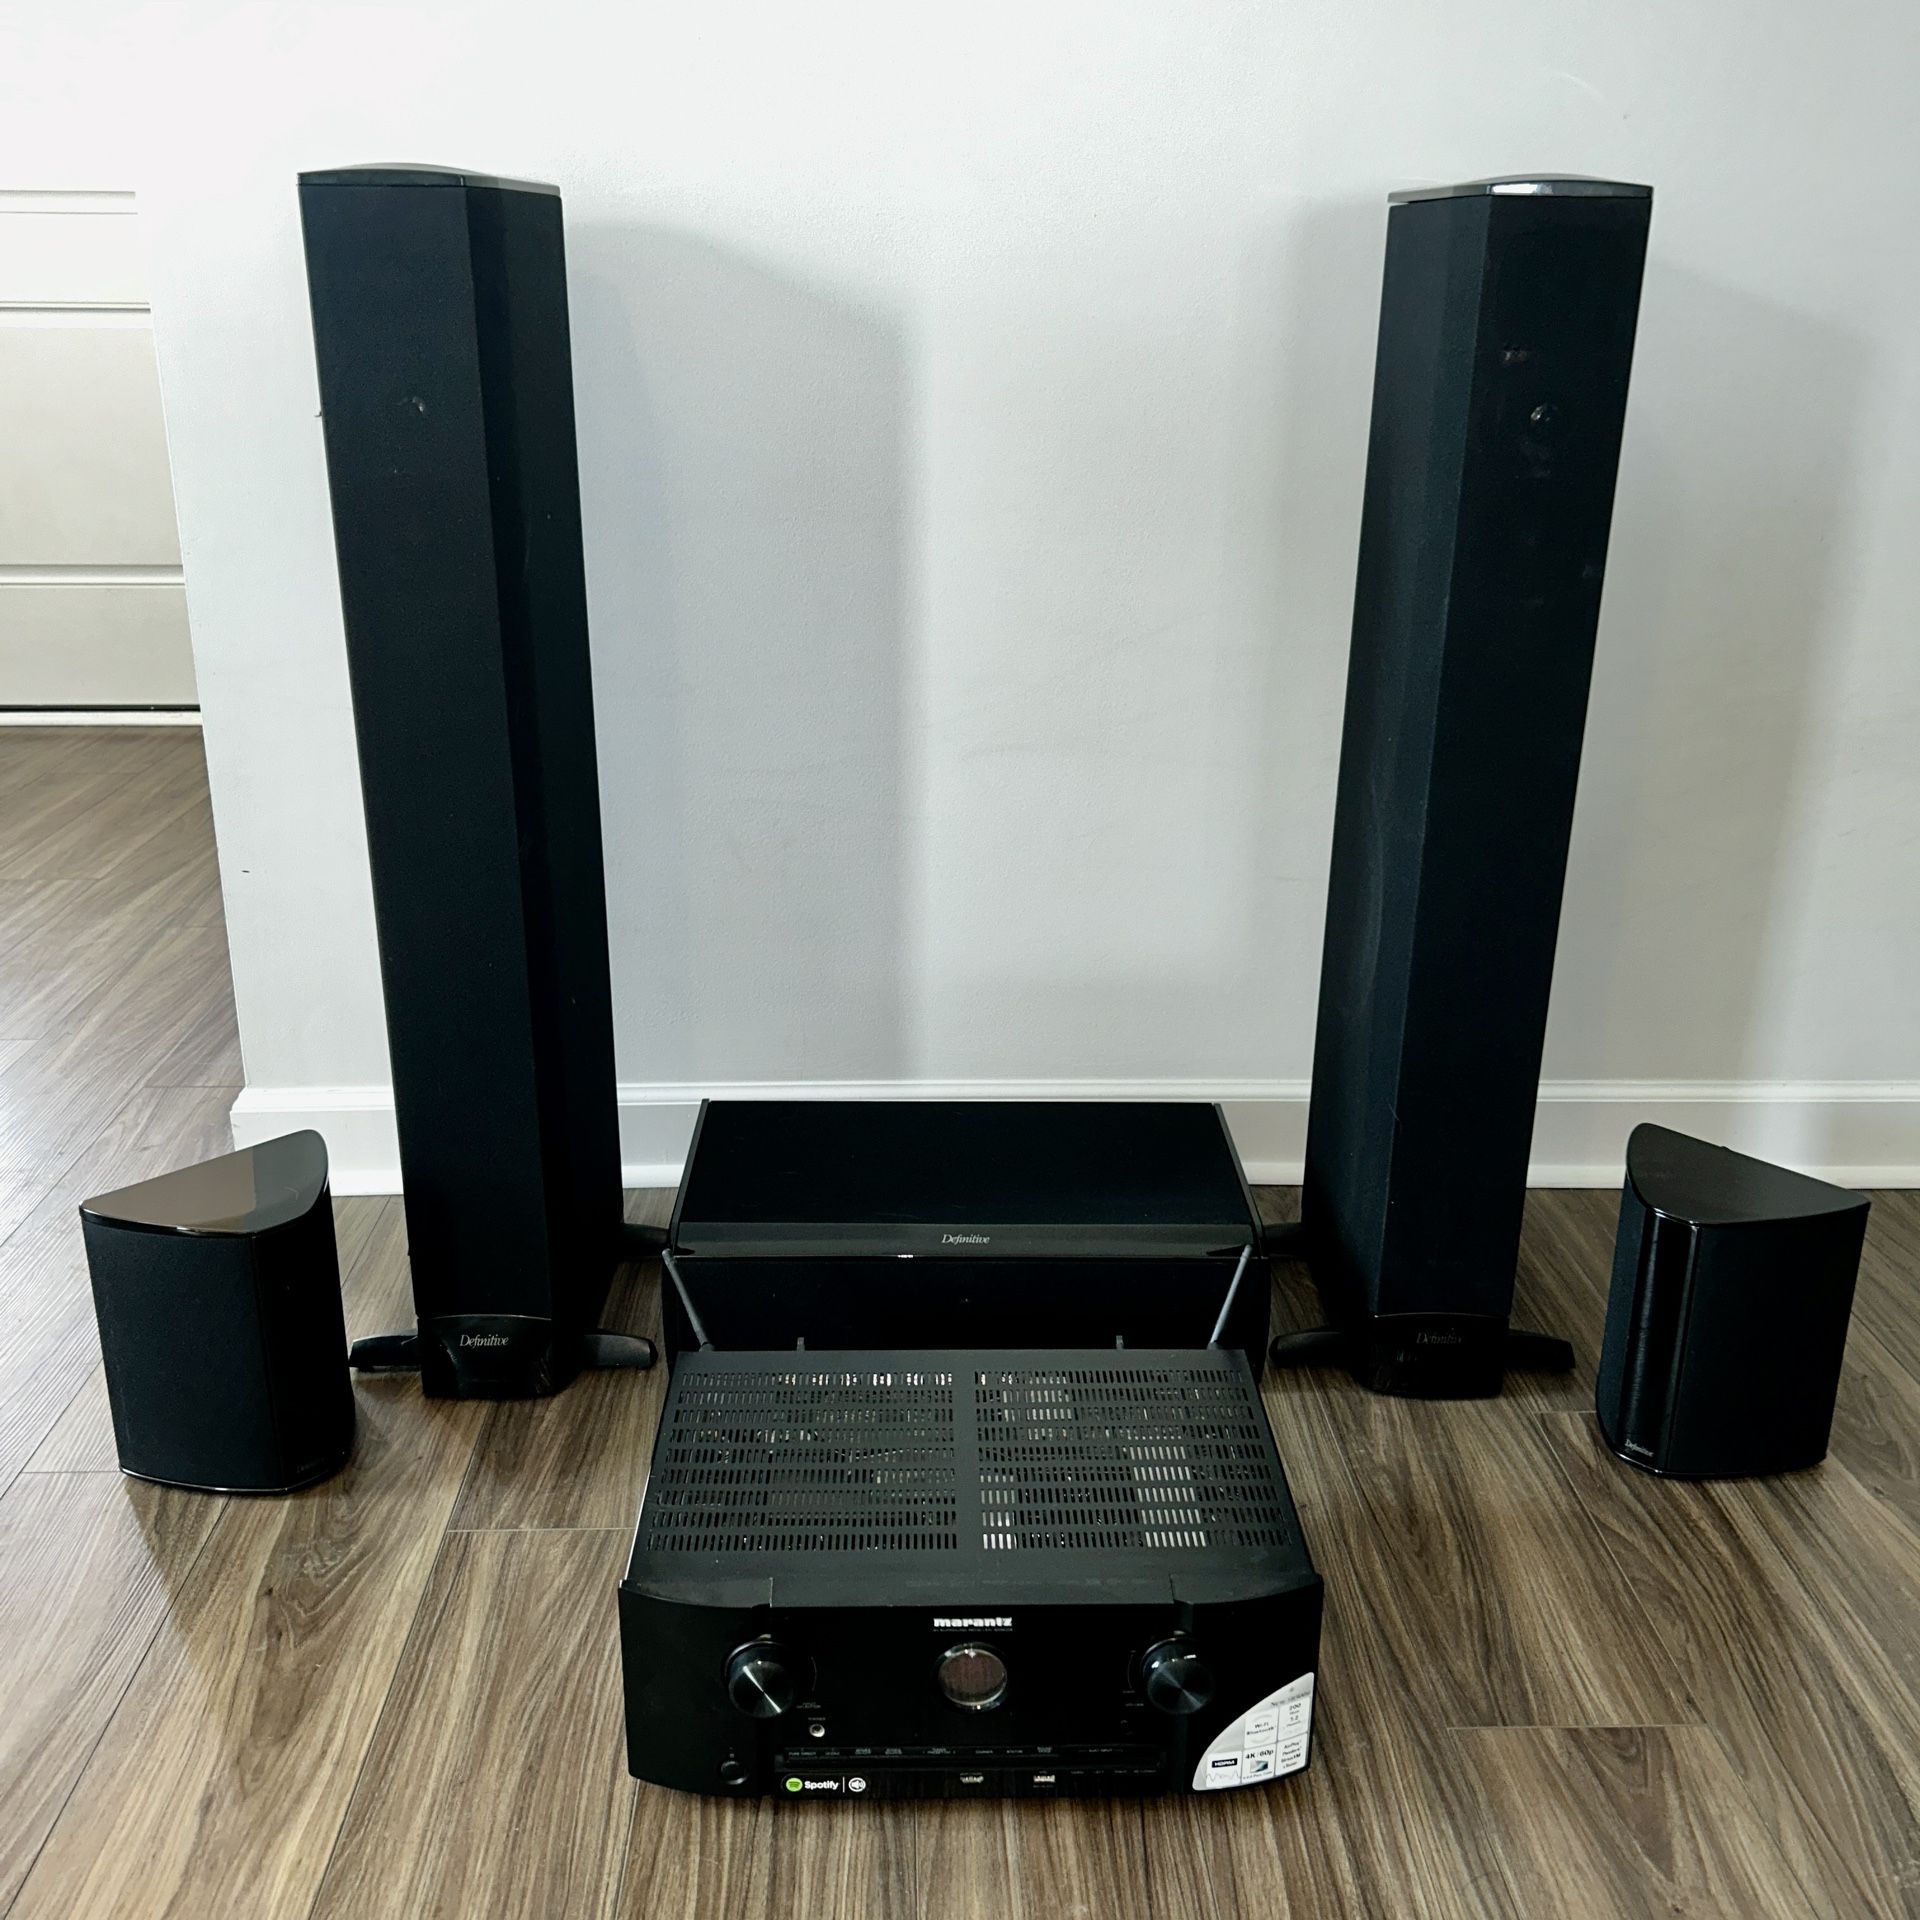 Speakers 5.1 Surround Sound System